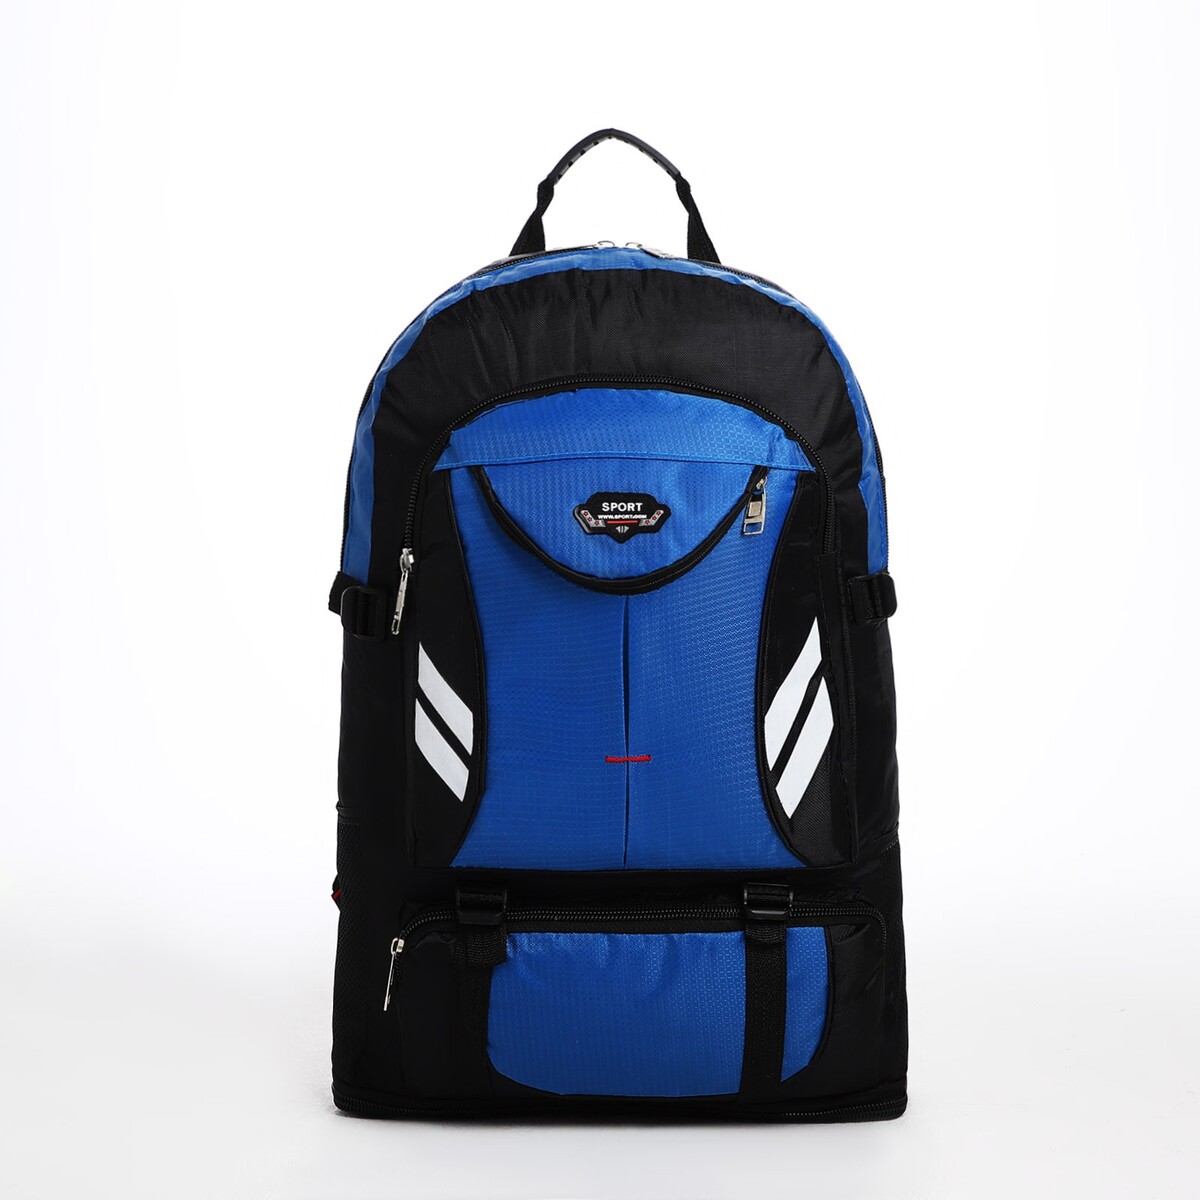 Рюкзак туристический на молнии, 4 наружных кармана, цвет синий/черный